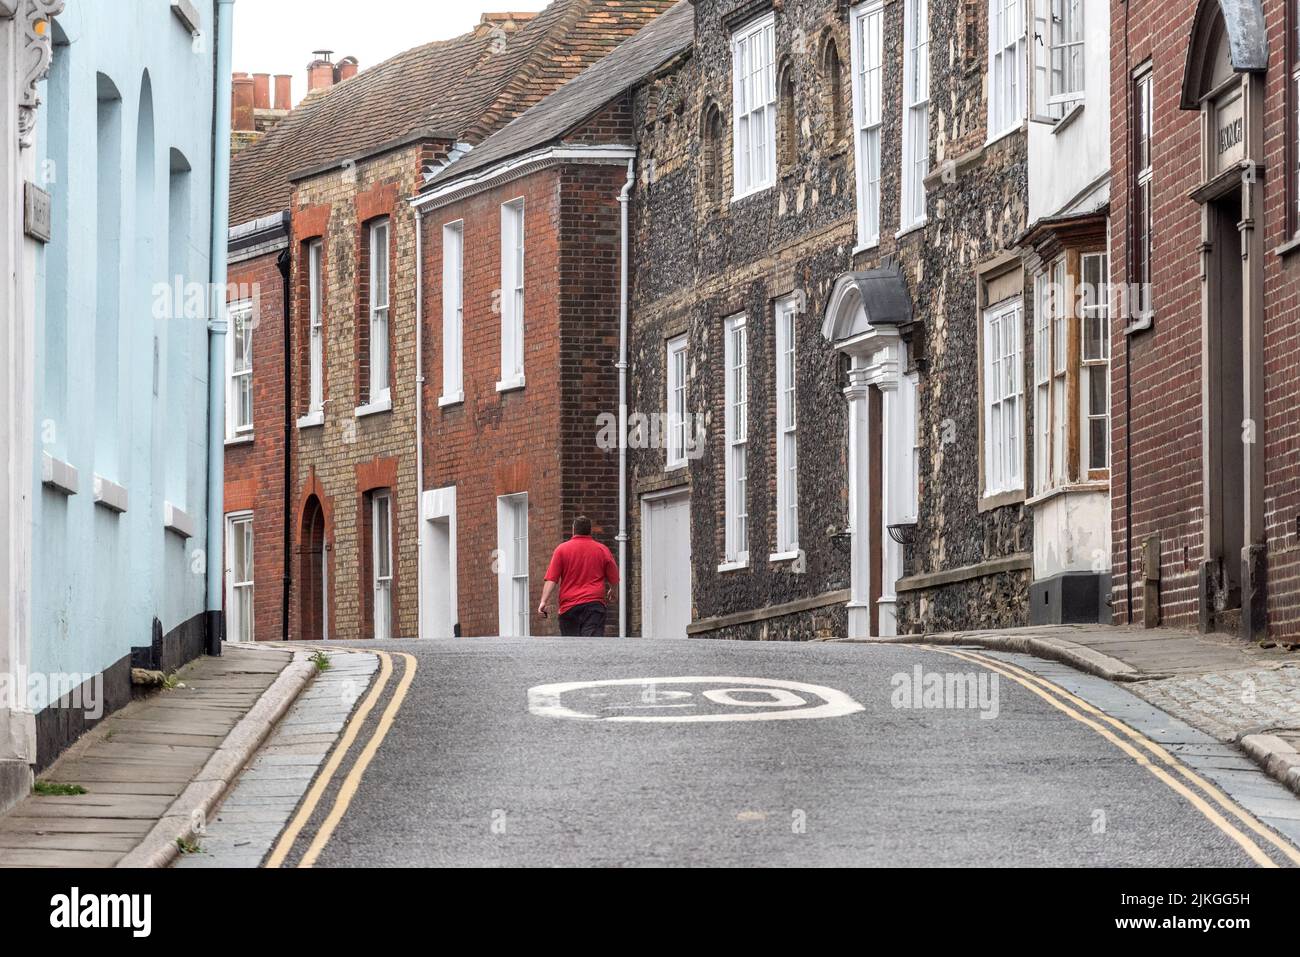 Sandwich, July 26th 2016: Empty streets of Sandwich in Kent Stock Photo